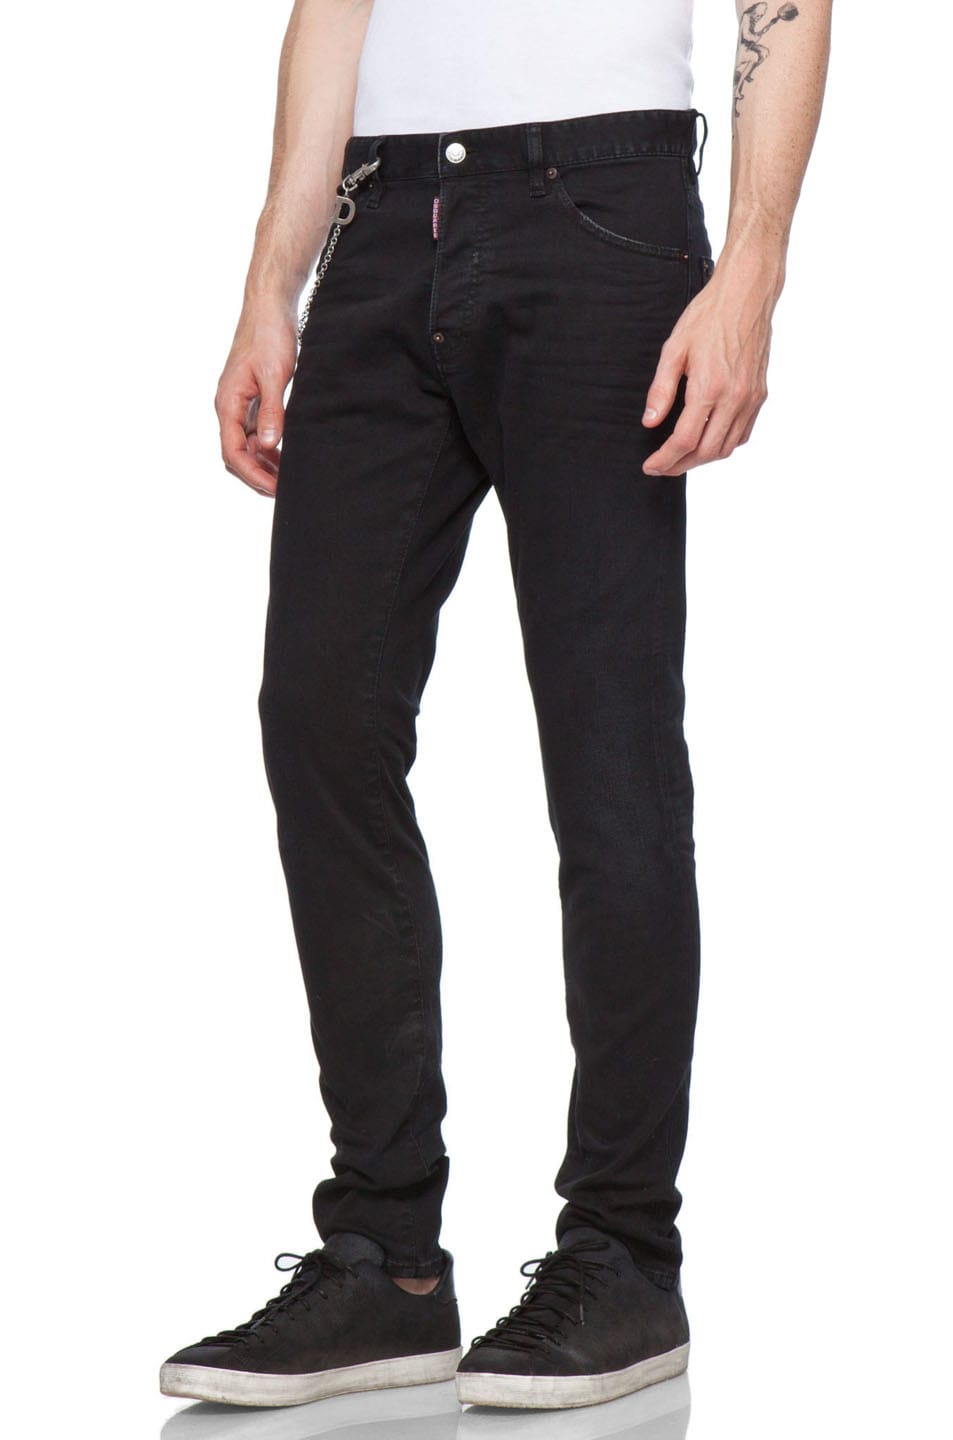 Cool Black Jeans - Jeans Am